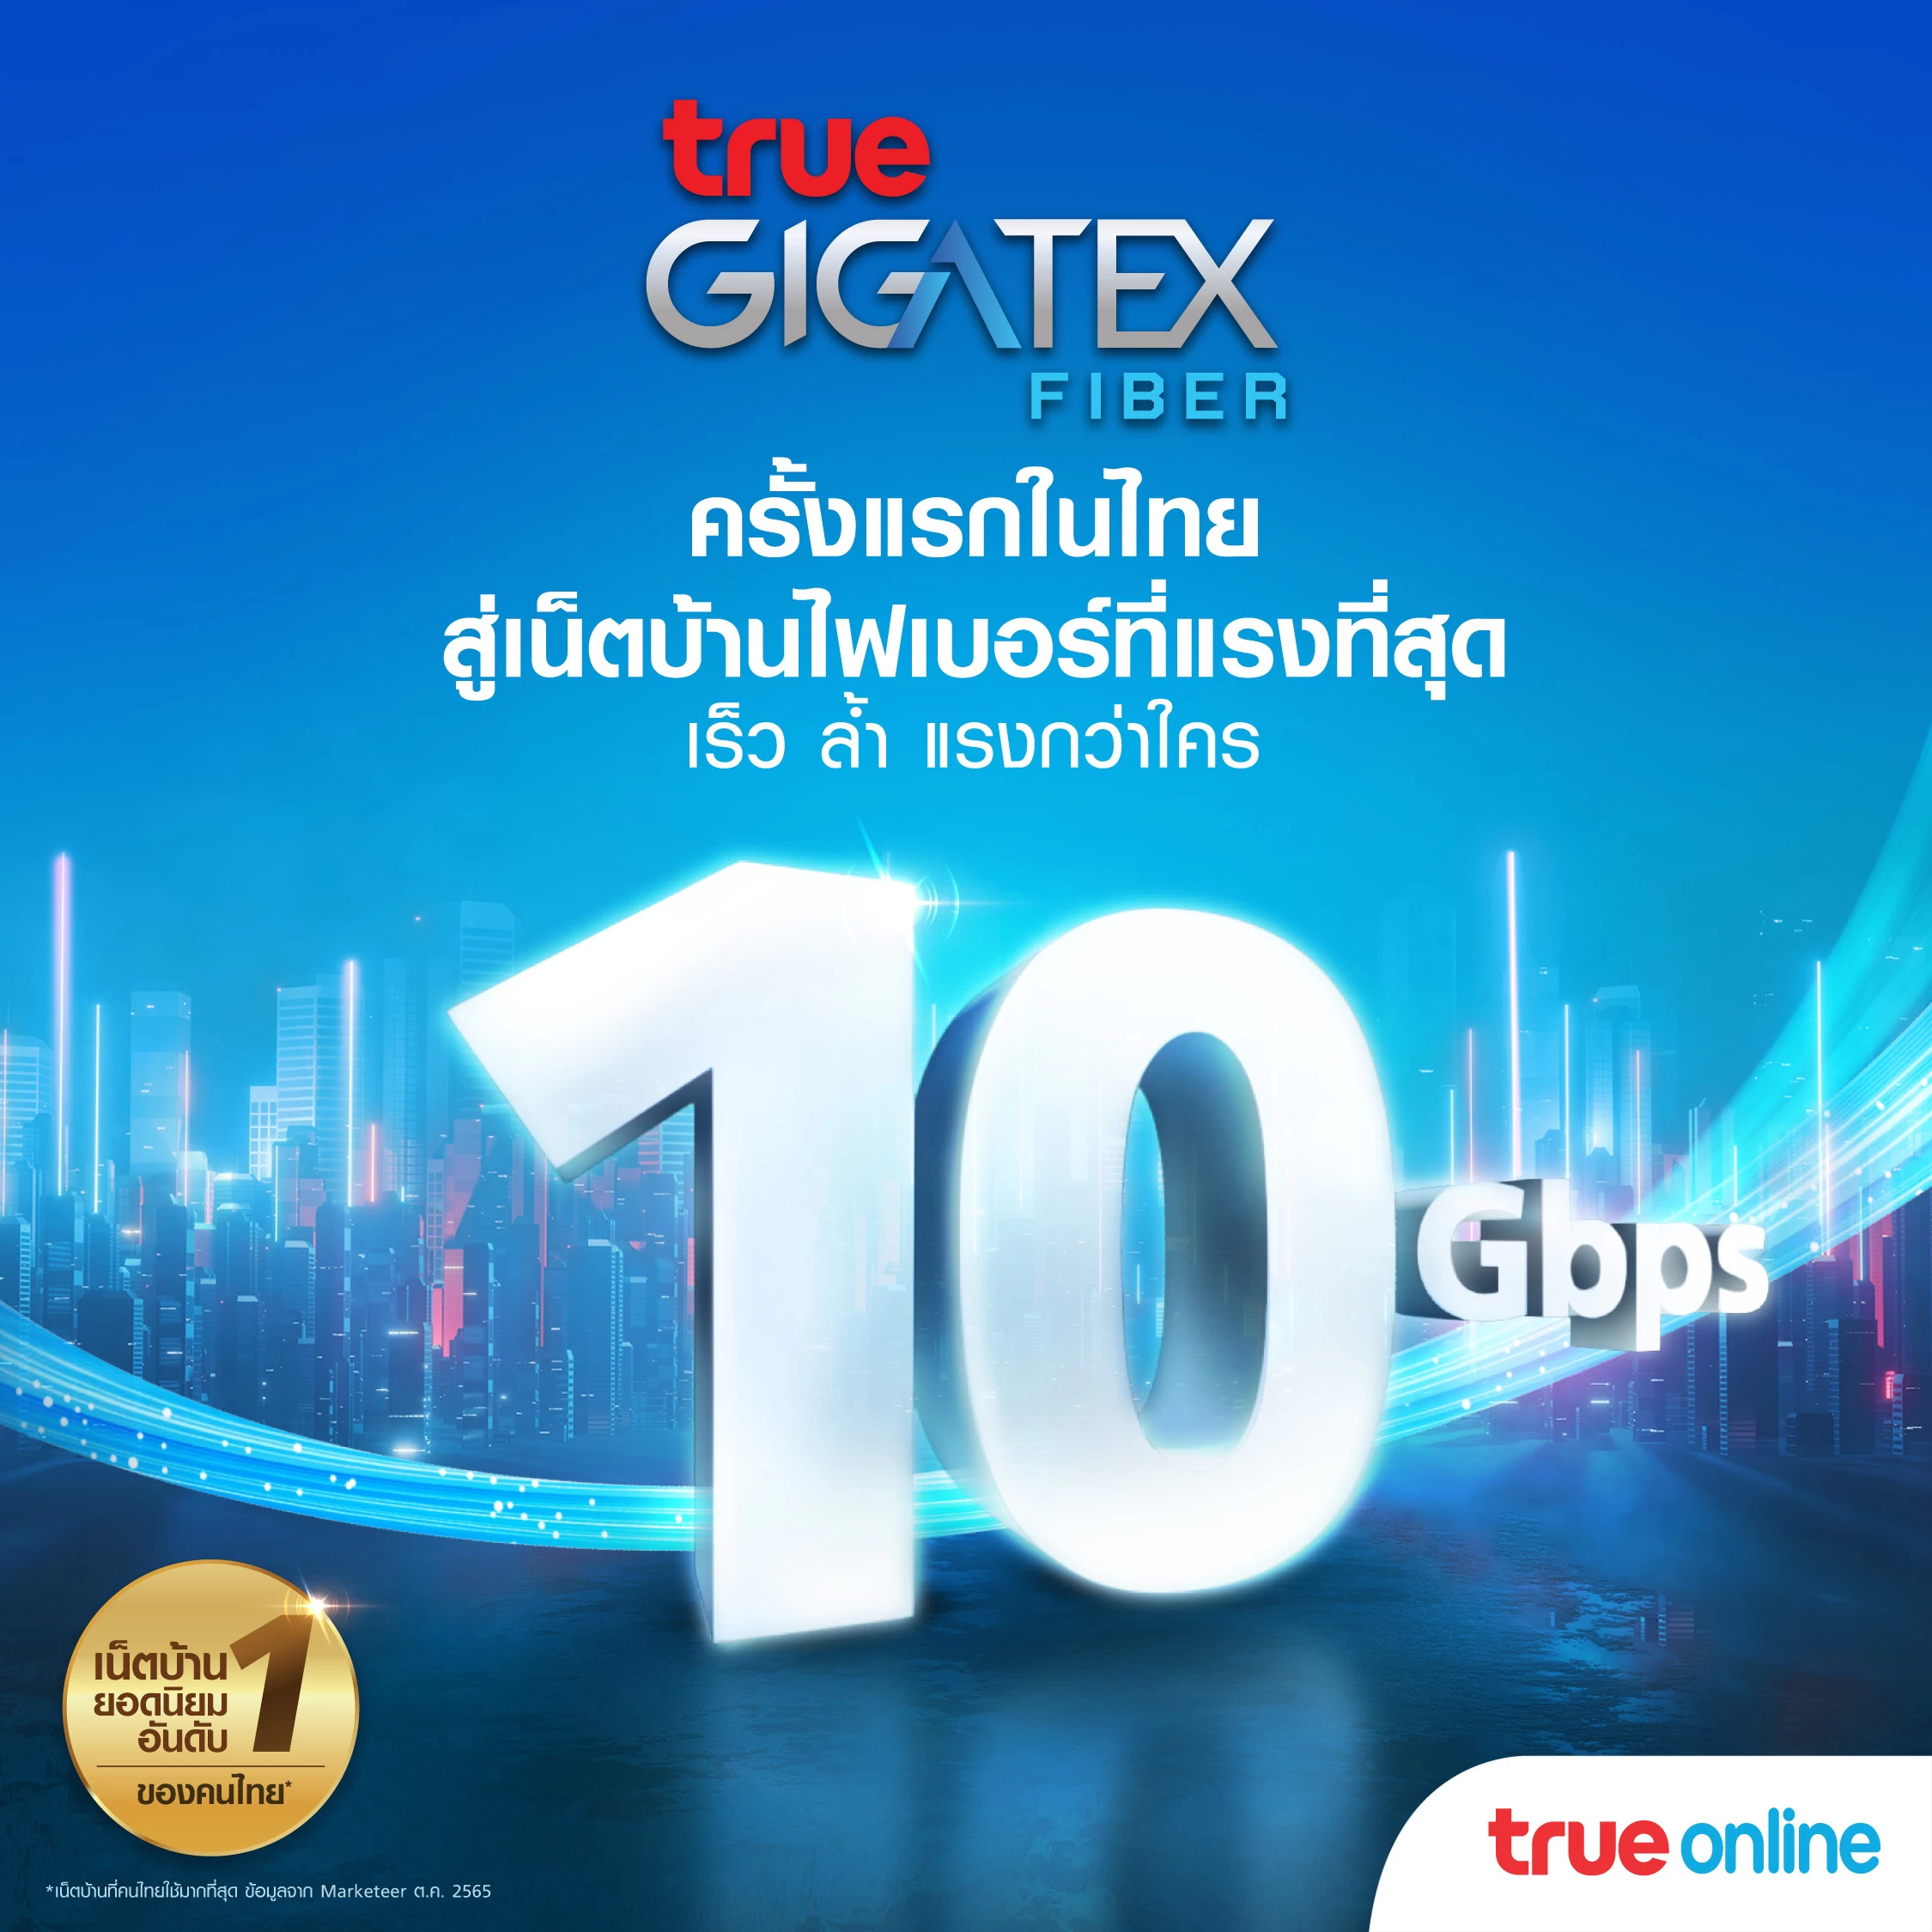 271 3 | True Gigatex Premium 10 Gbps. | ทรูออนไลน์ เจาะกลุ่มลูกค้าไฮเอ็นเน็ตบ้านแรงสุด10 Gbps ในไทย